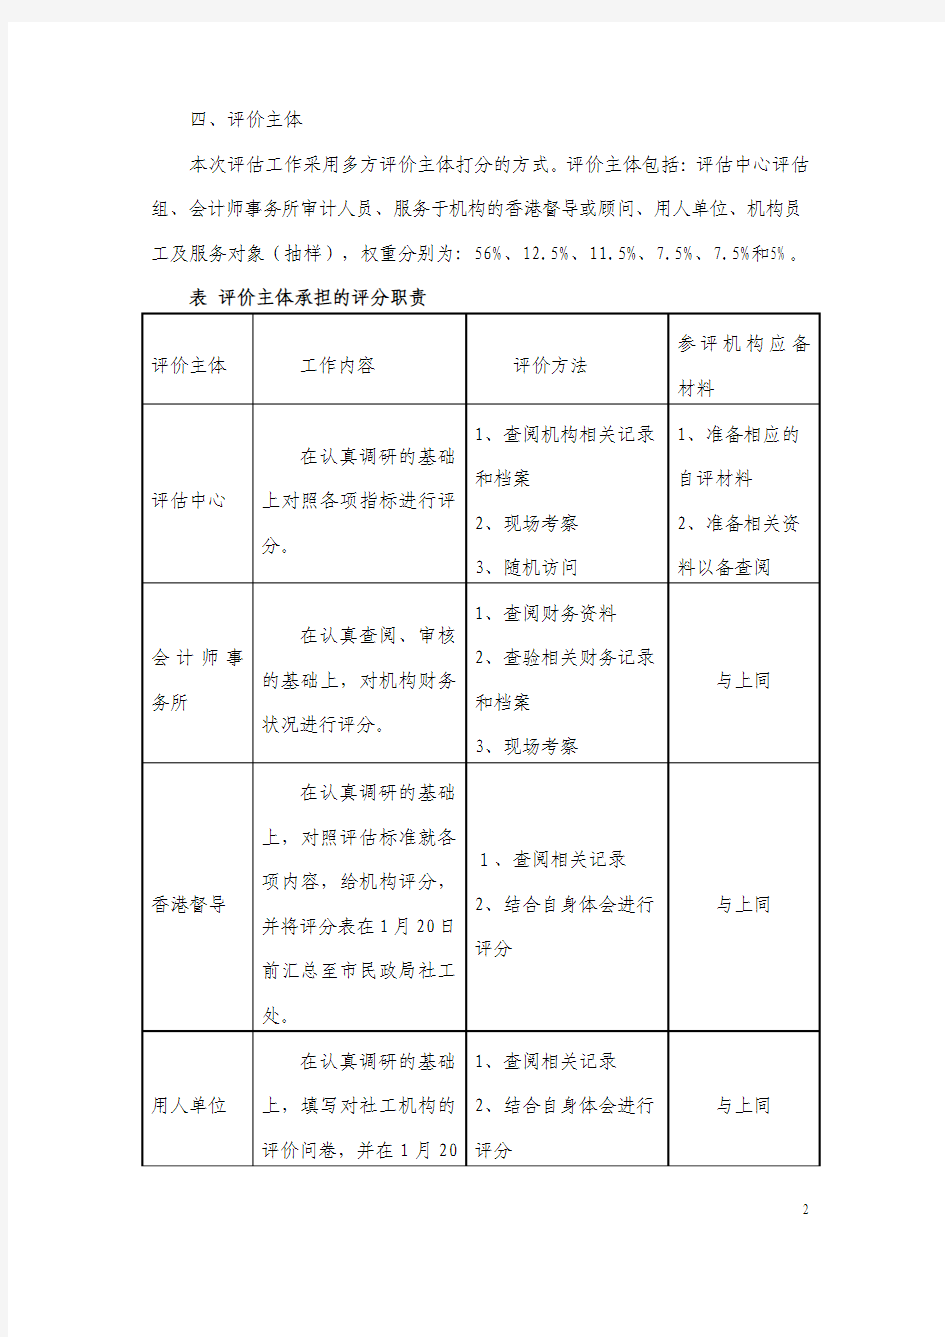 2012年度深圳市社会工作服务机构绩效评估实施办法